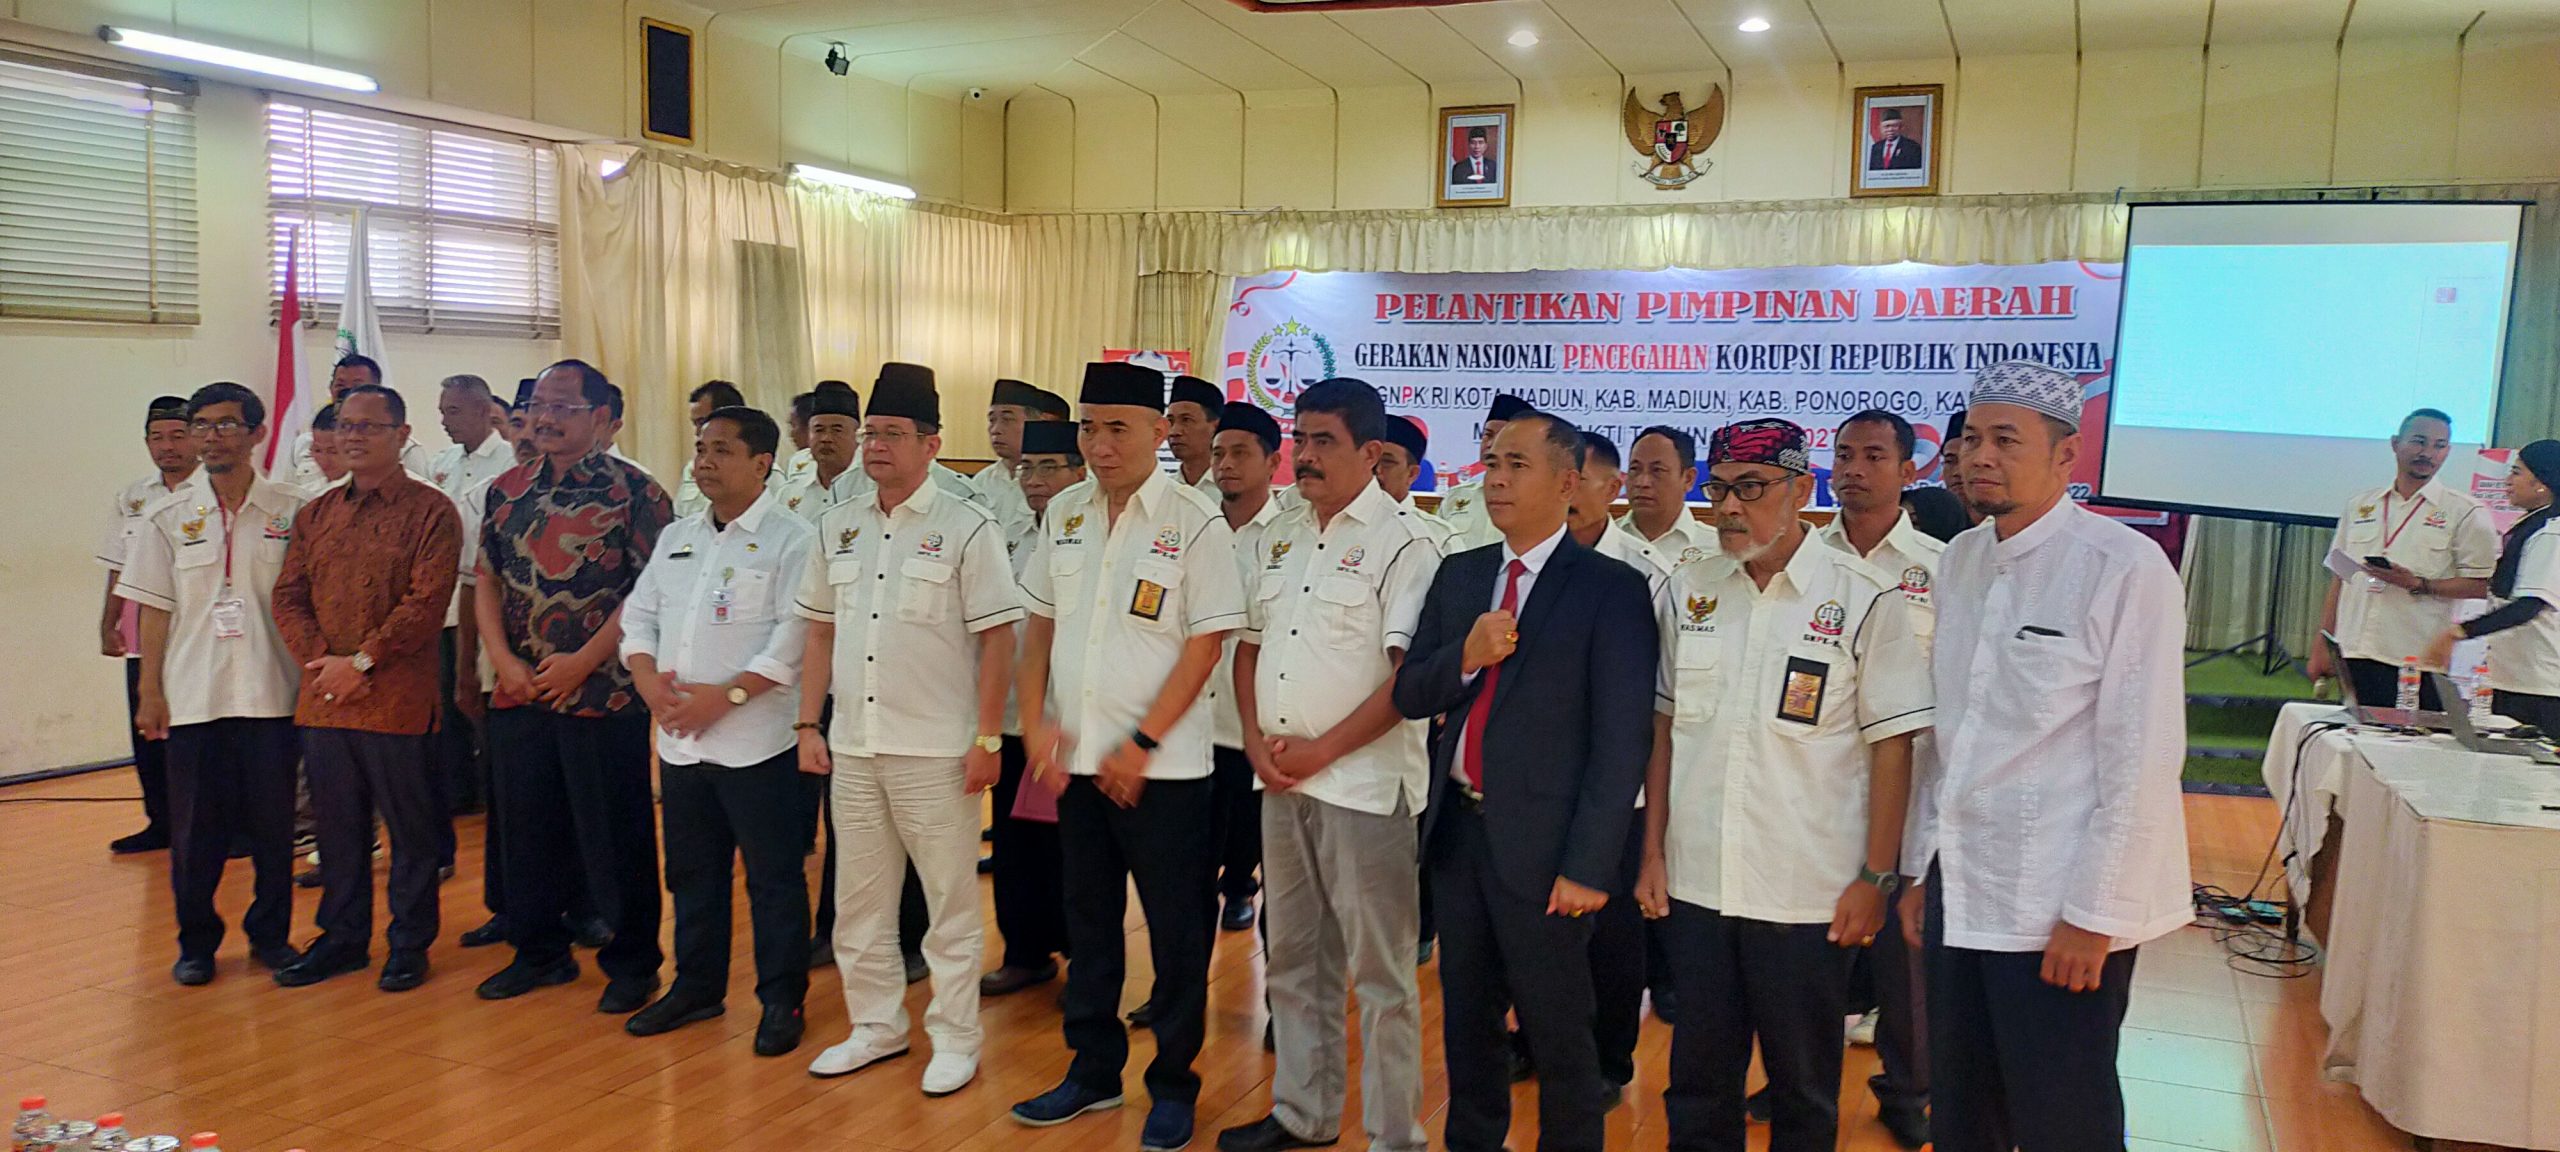 Foto Istimewa : Ketua Umum GNPK RI Pusat dan Ketua GNPK RI Jatim dan Daerah Foto Bersama